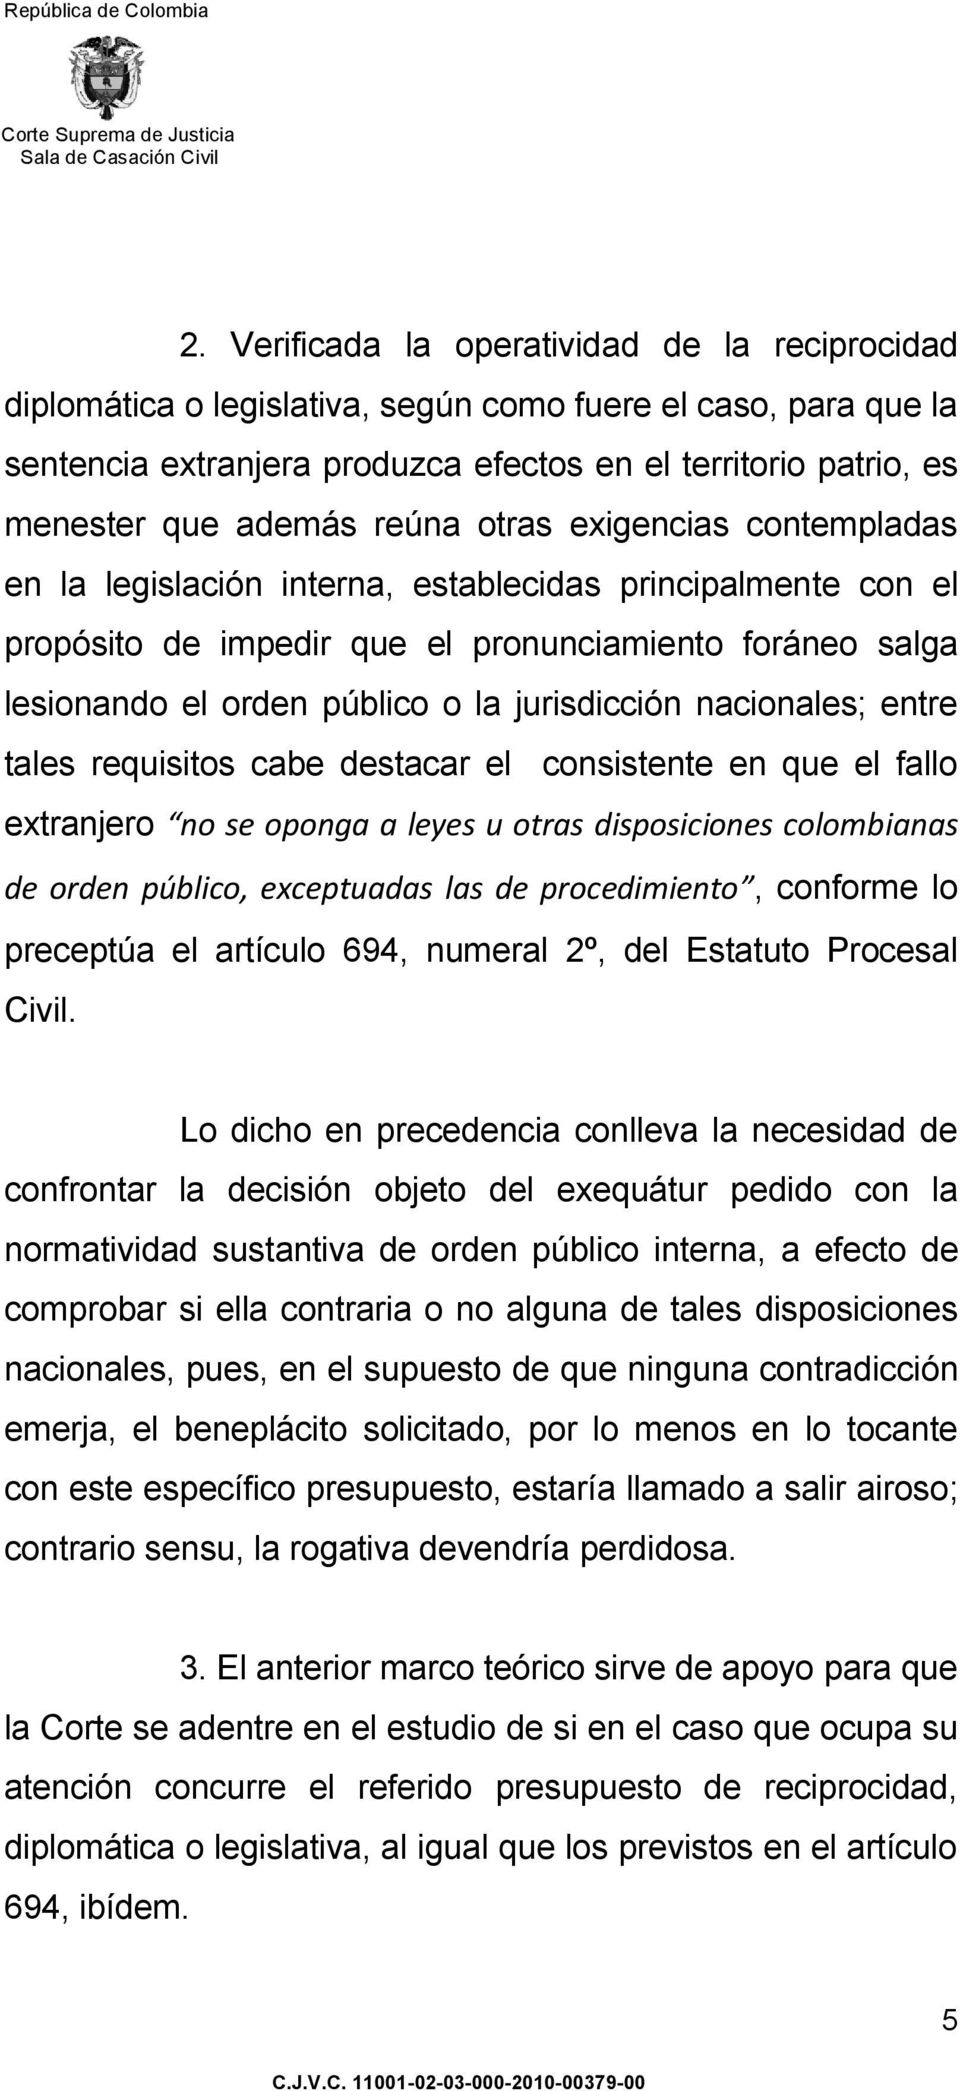 jurisdicción nacionales; entre tales requisitos cabe destacar el consistente en que el fallo extranjero no se oponga a leyes u otras disposiciones colombianas de orden público, exceptuadas las de